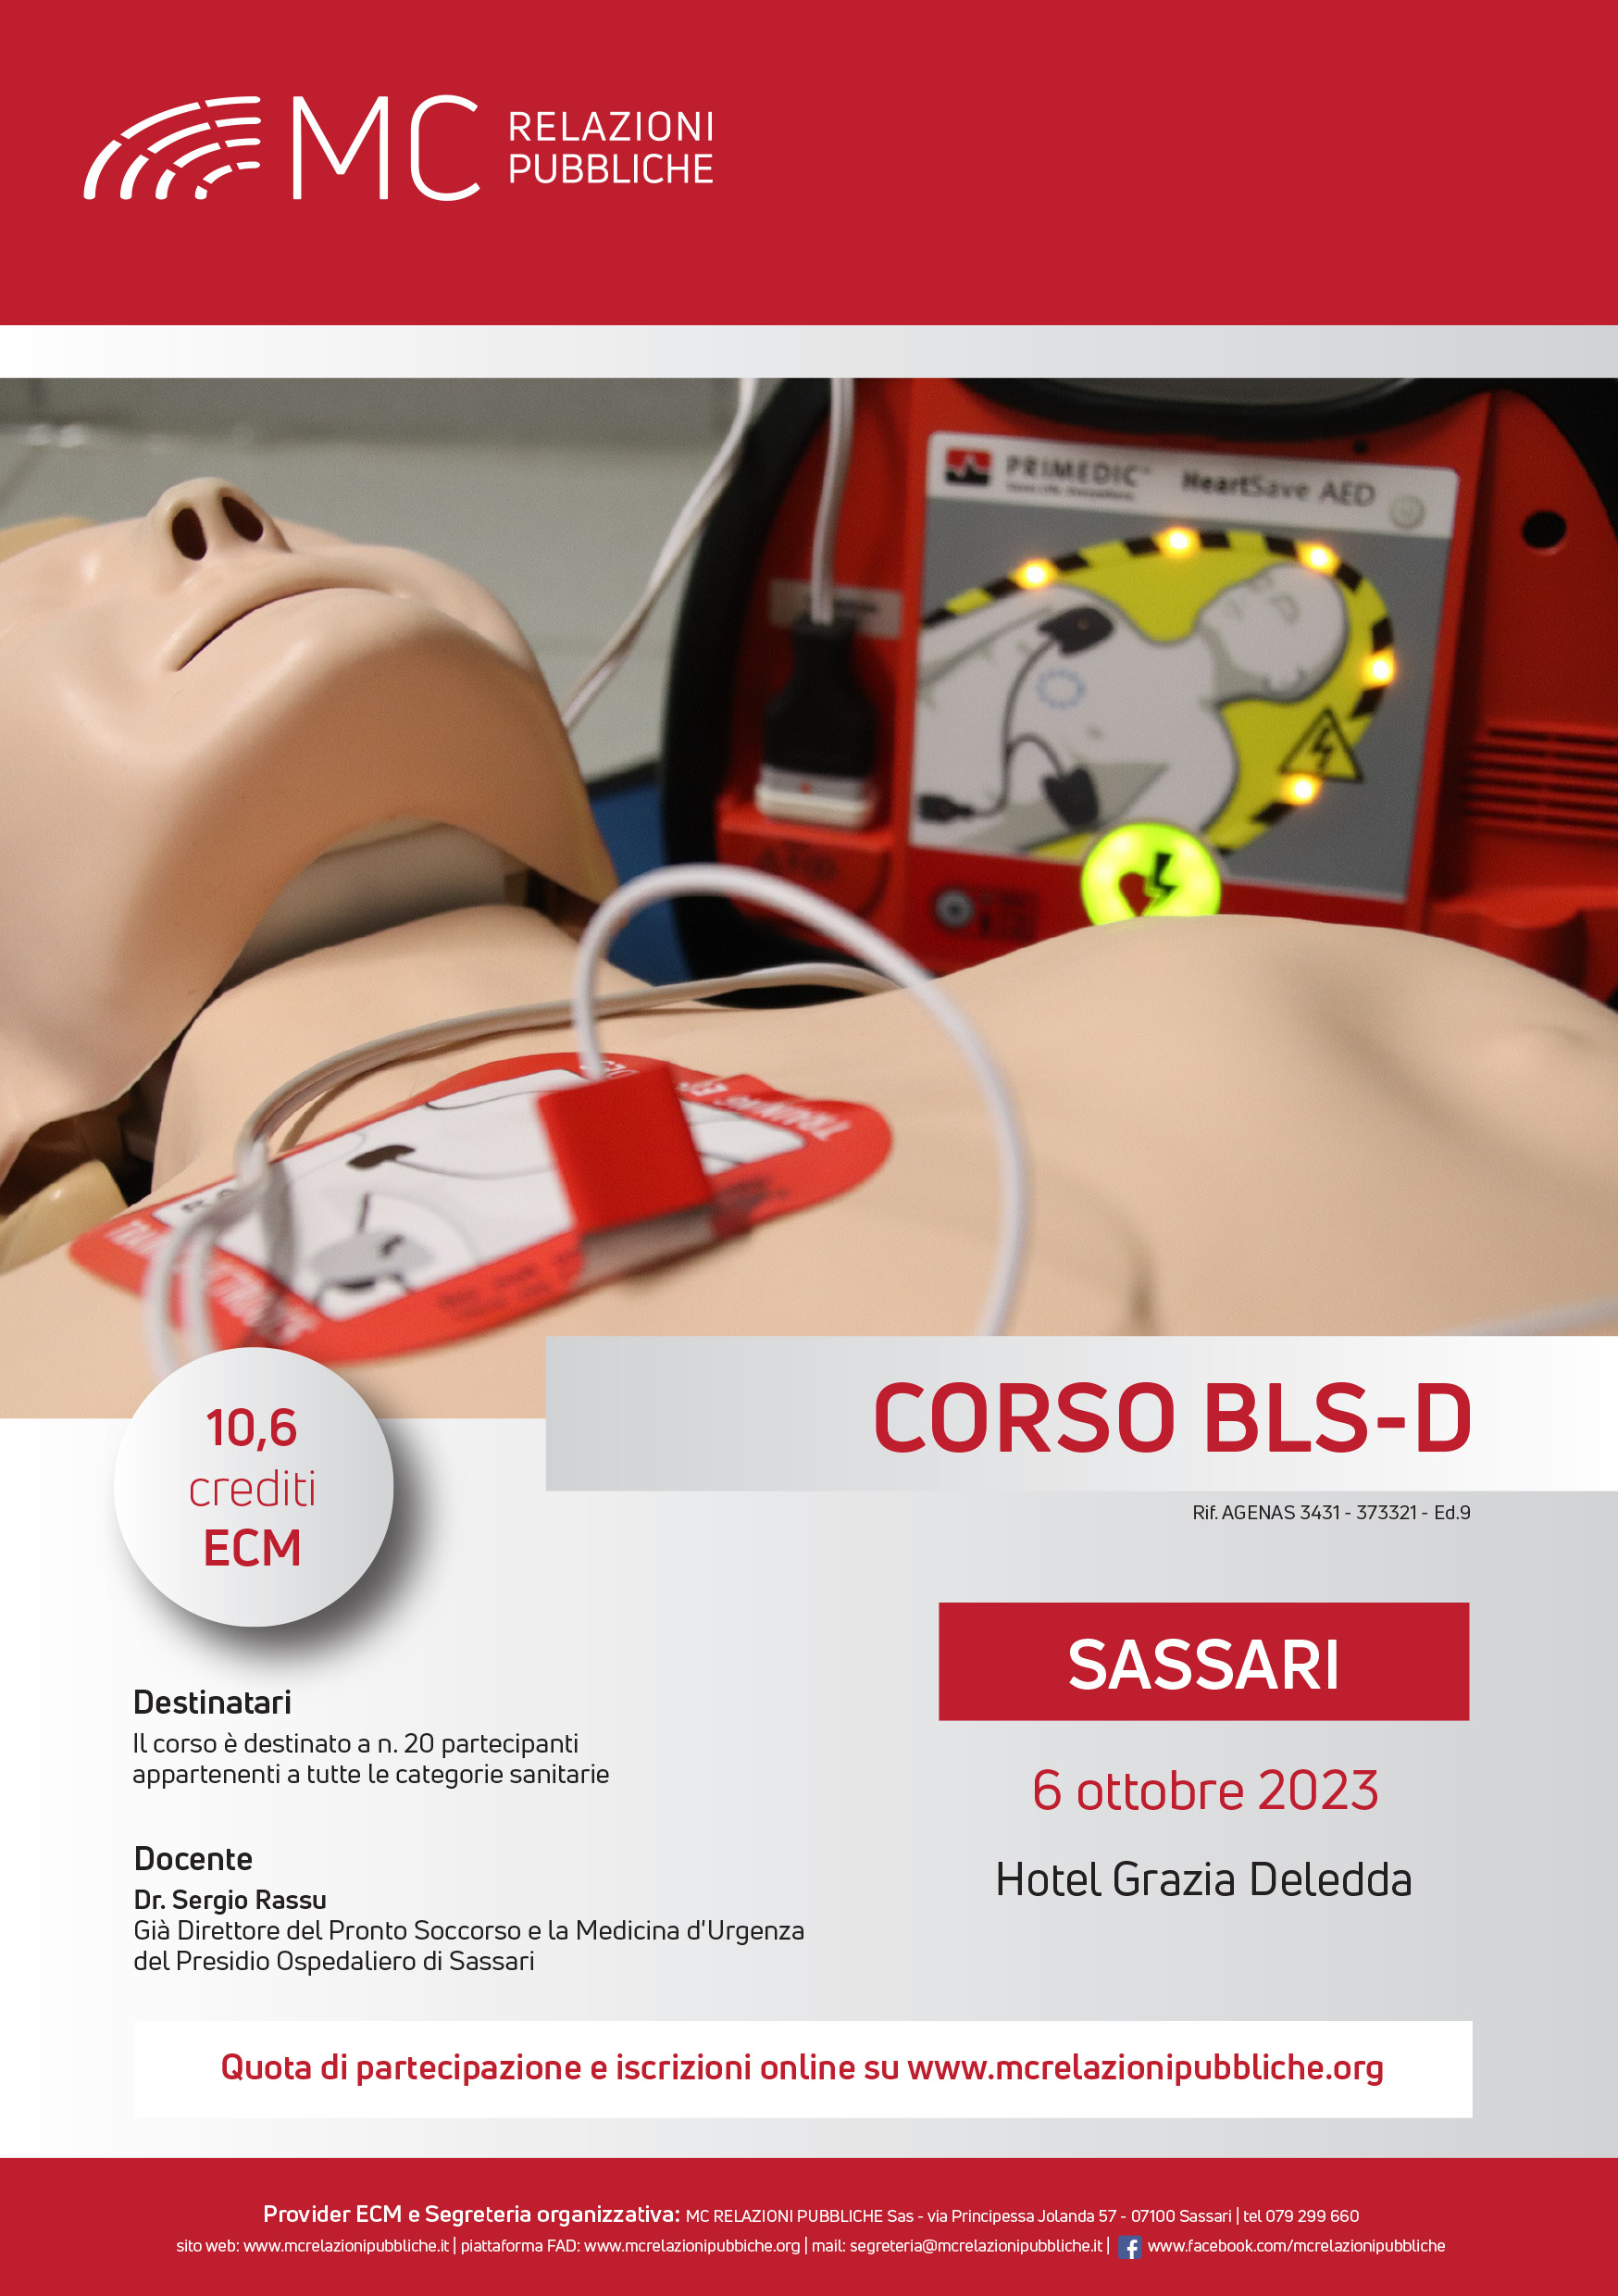 Corso BLS-D. Basic Life Support-Defibrillation - 6 ottobre 2023